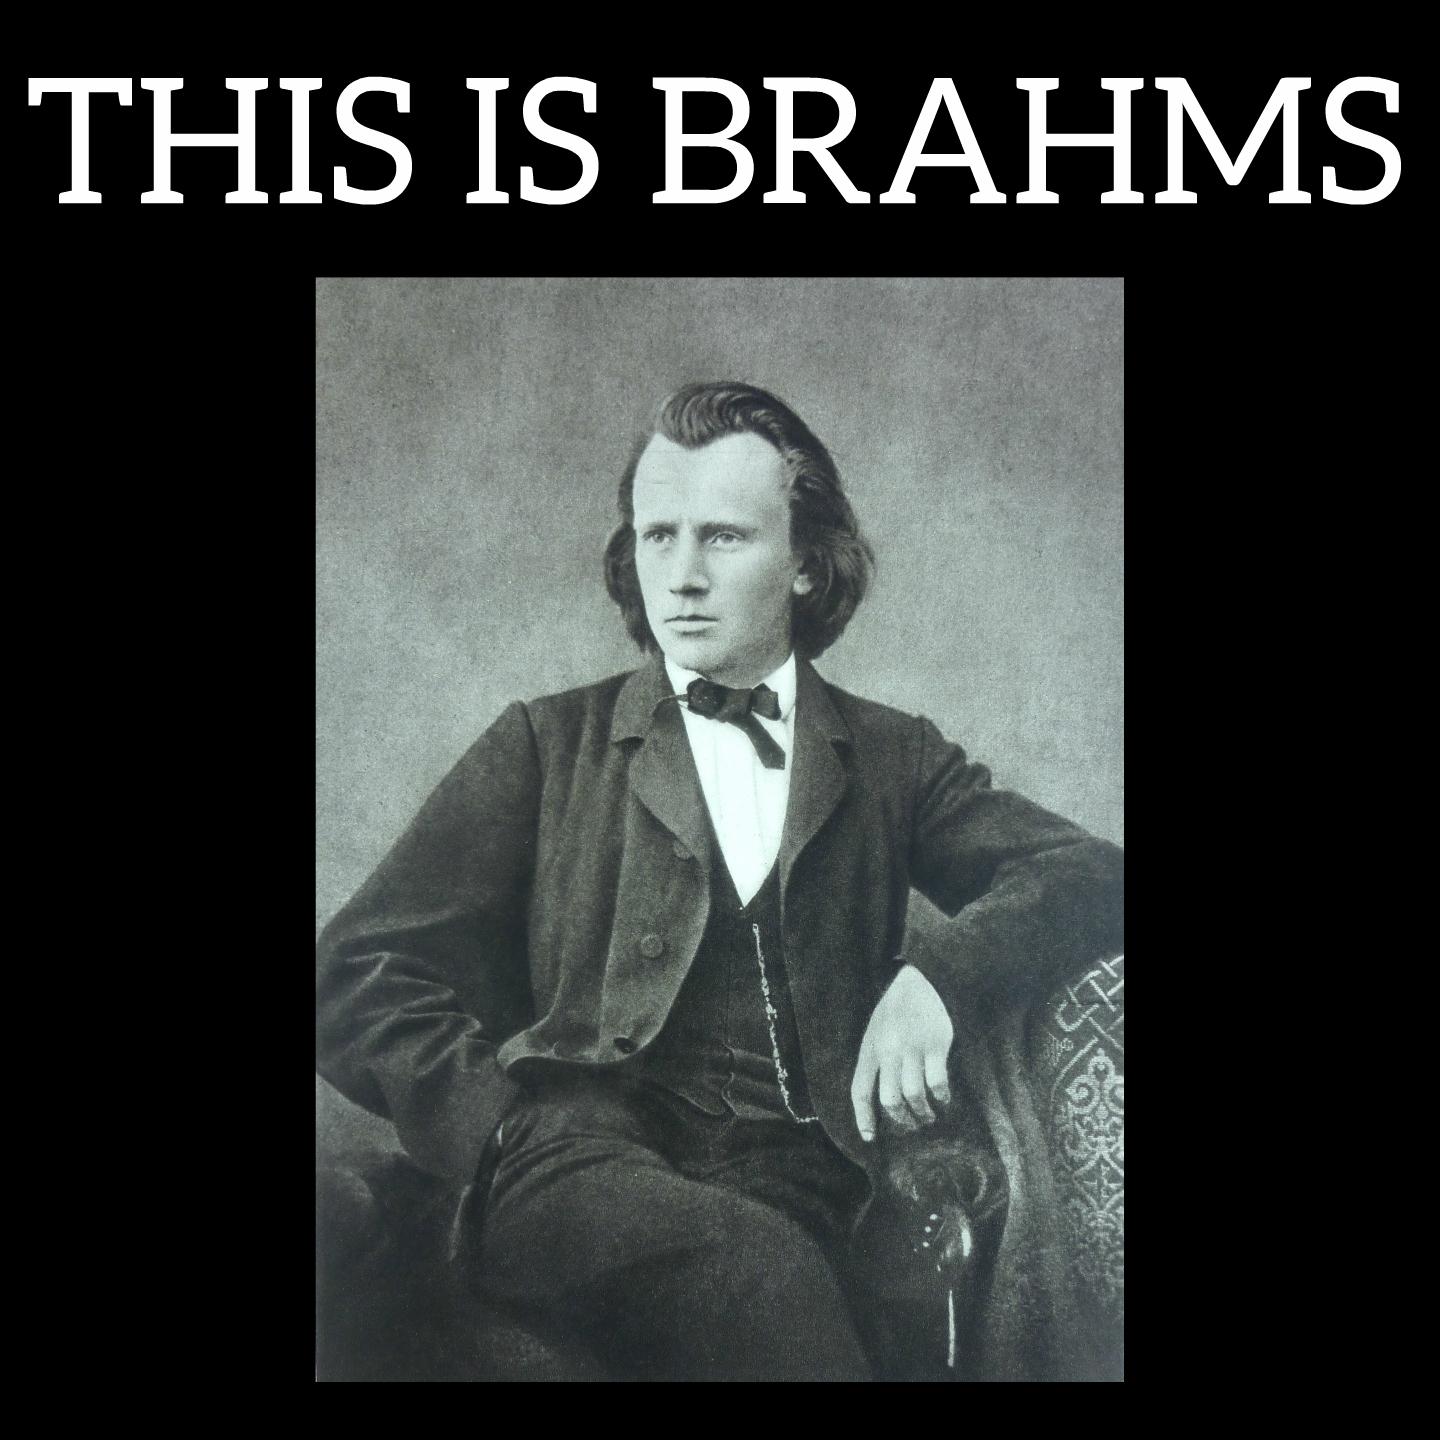 This is Brahms